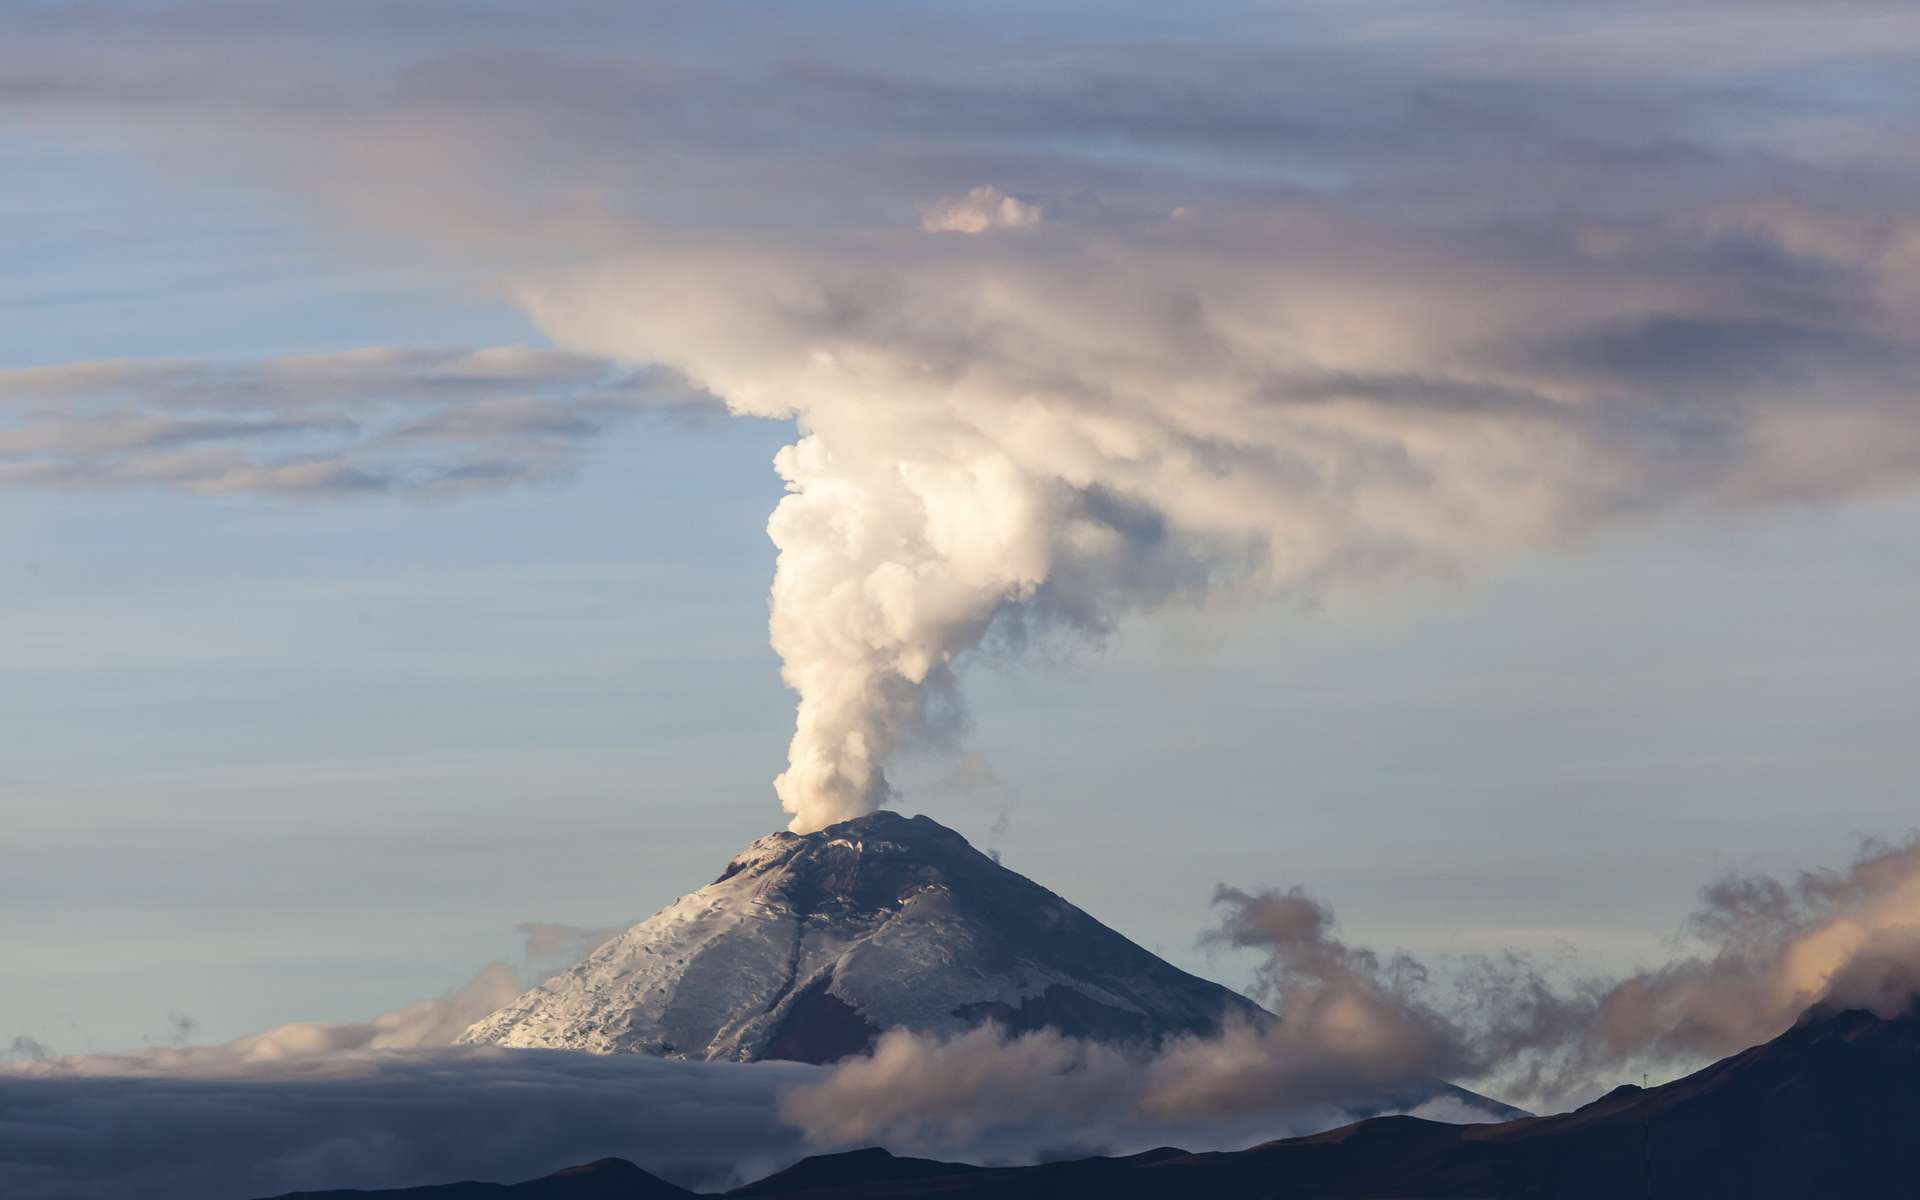 Les grandes éruptions peuvent modifier le climat et entraîner un hiver volcanique. © Ecuadorquerido, Adobe Stock